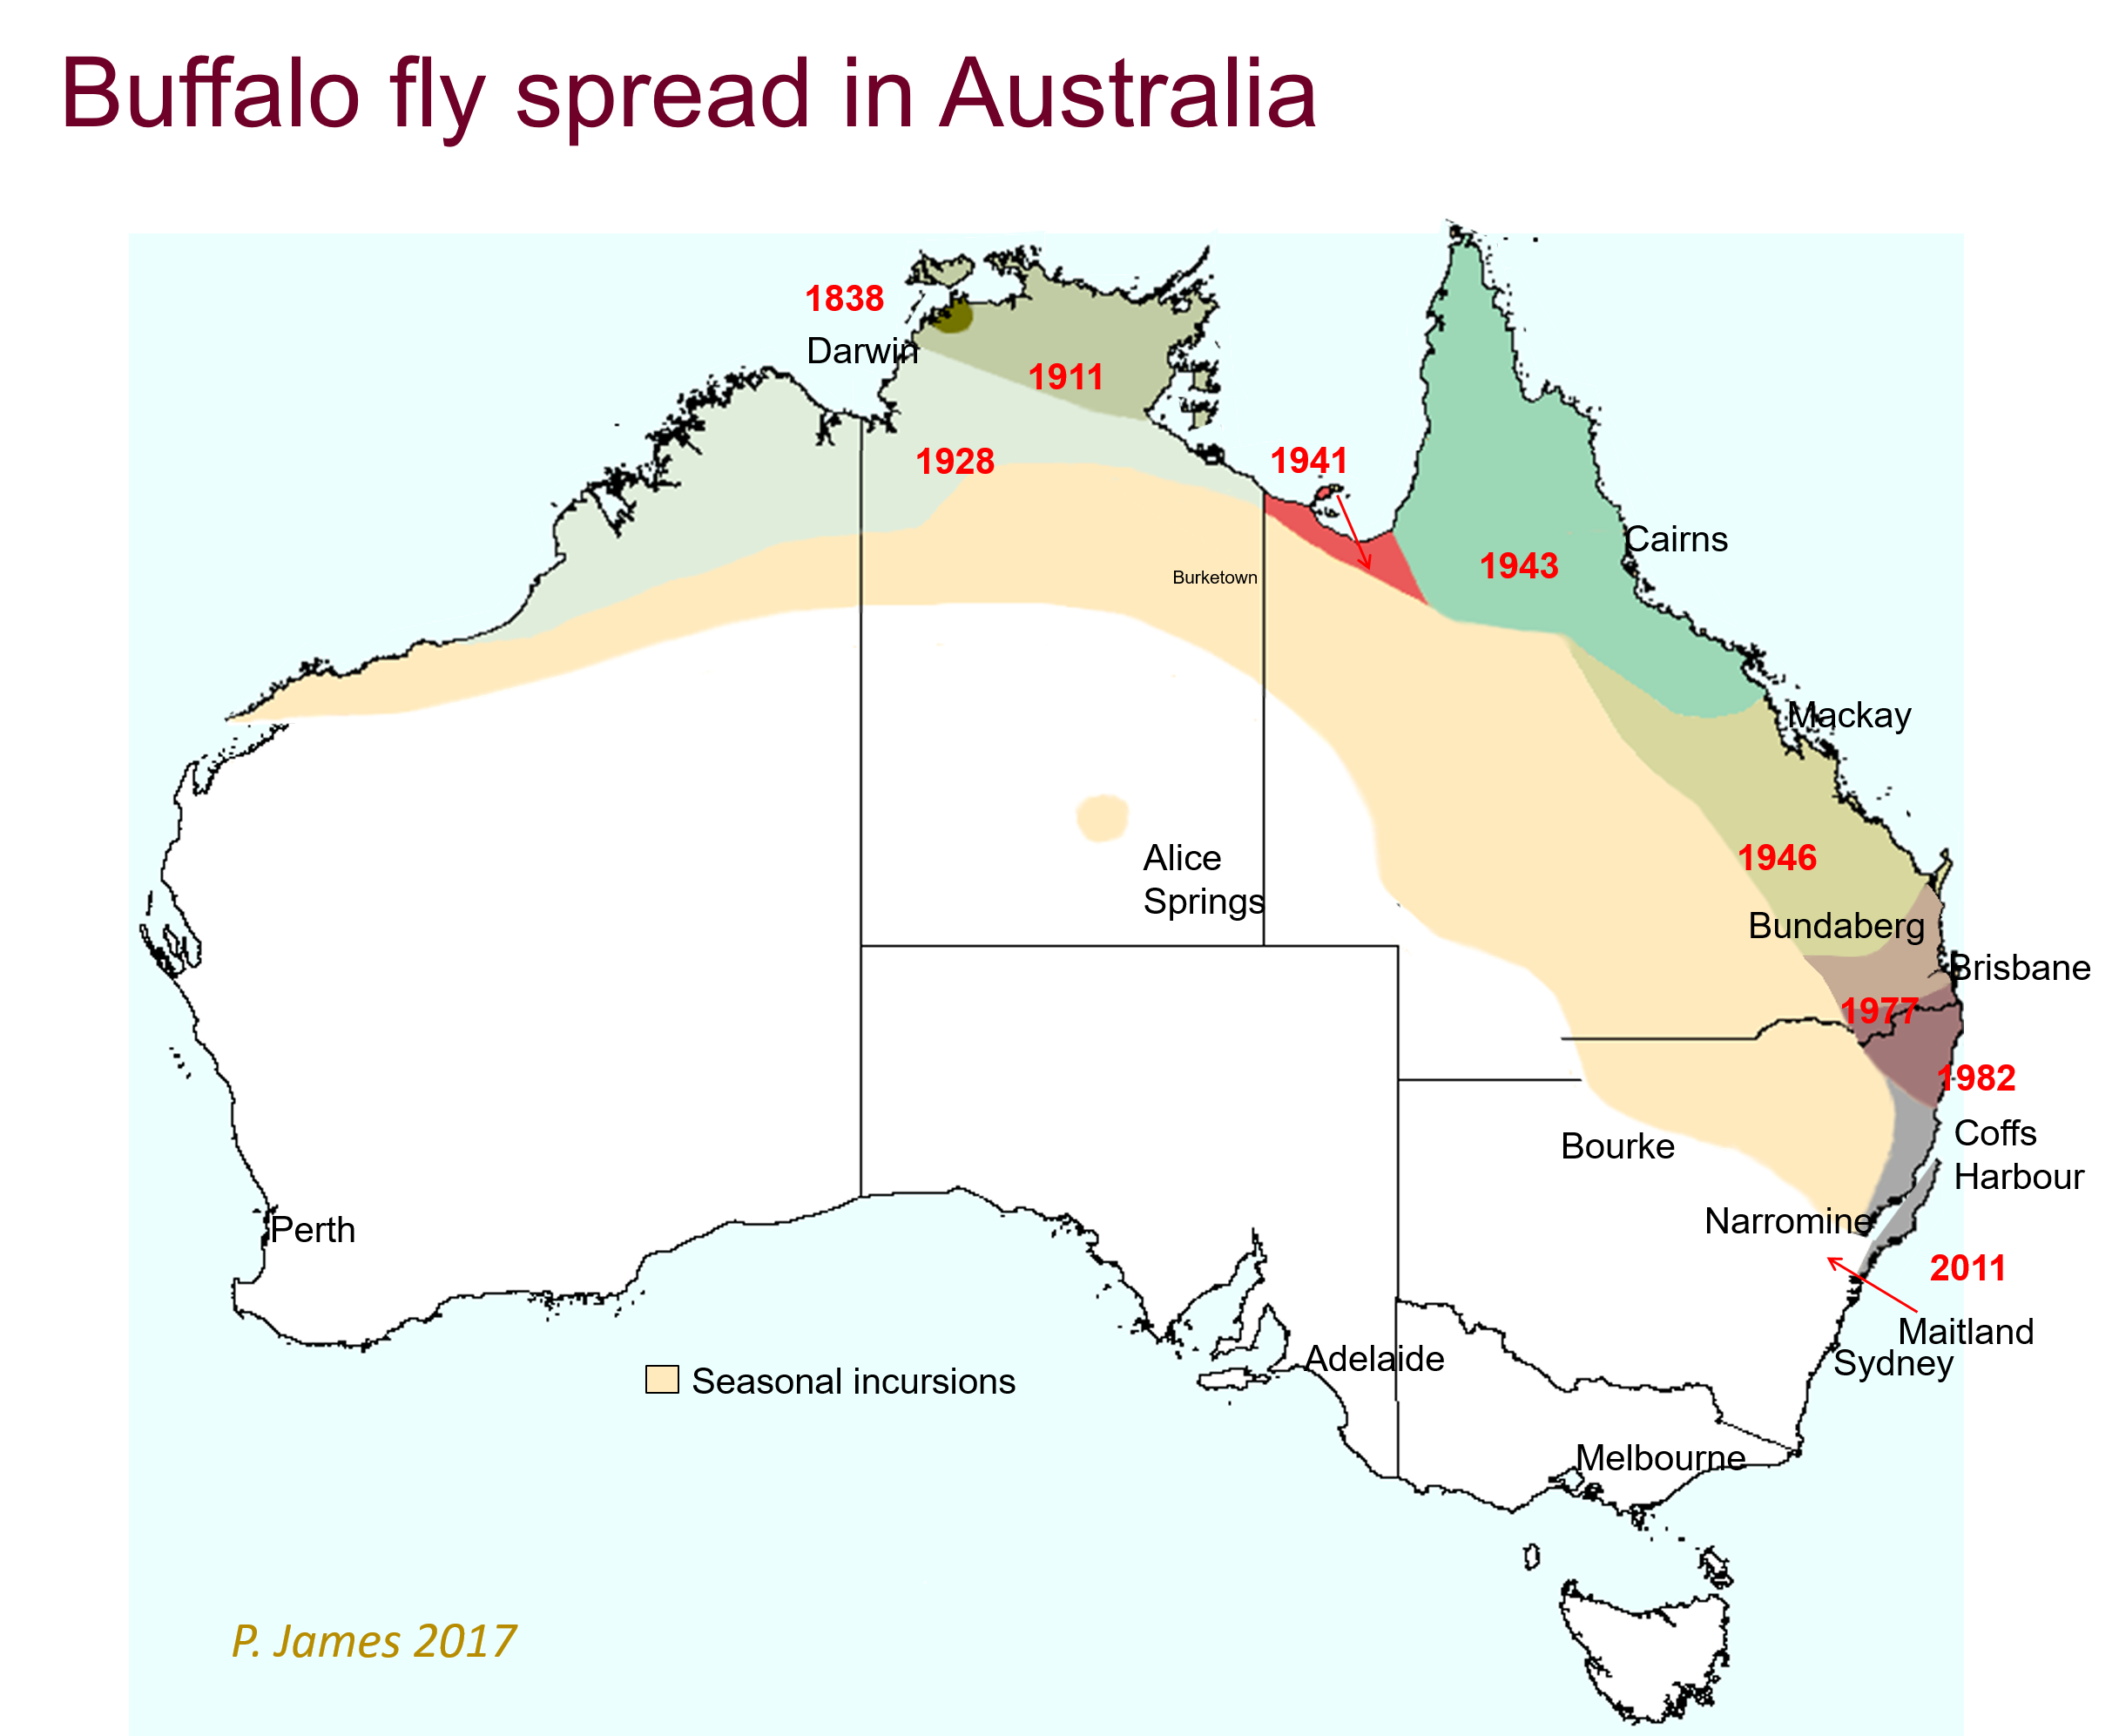 Mao of buffalo fly spread in Australia